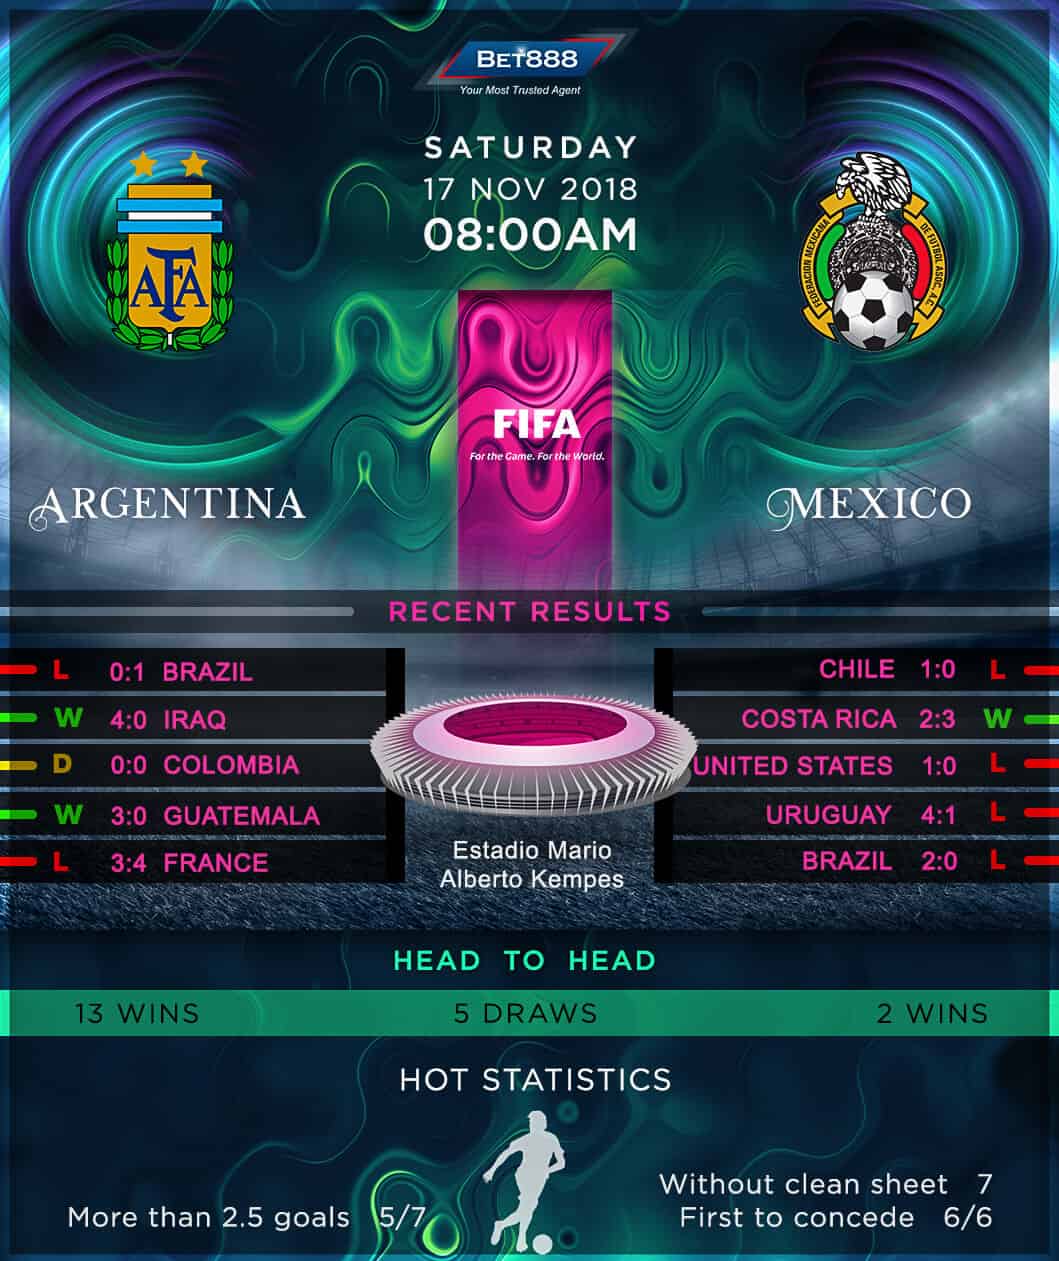 Argentina vs Mexico 21/11/18